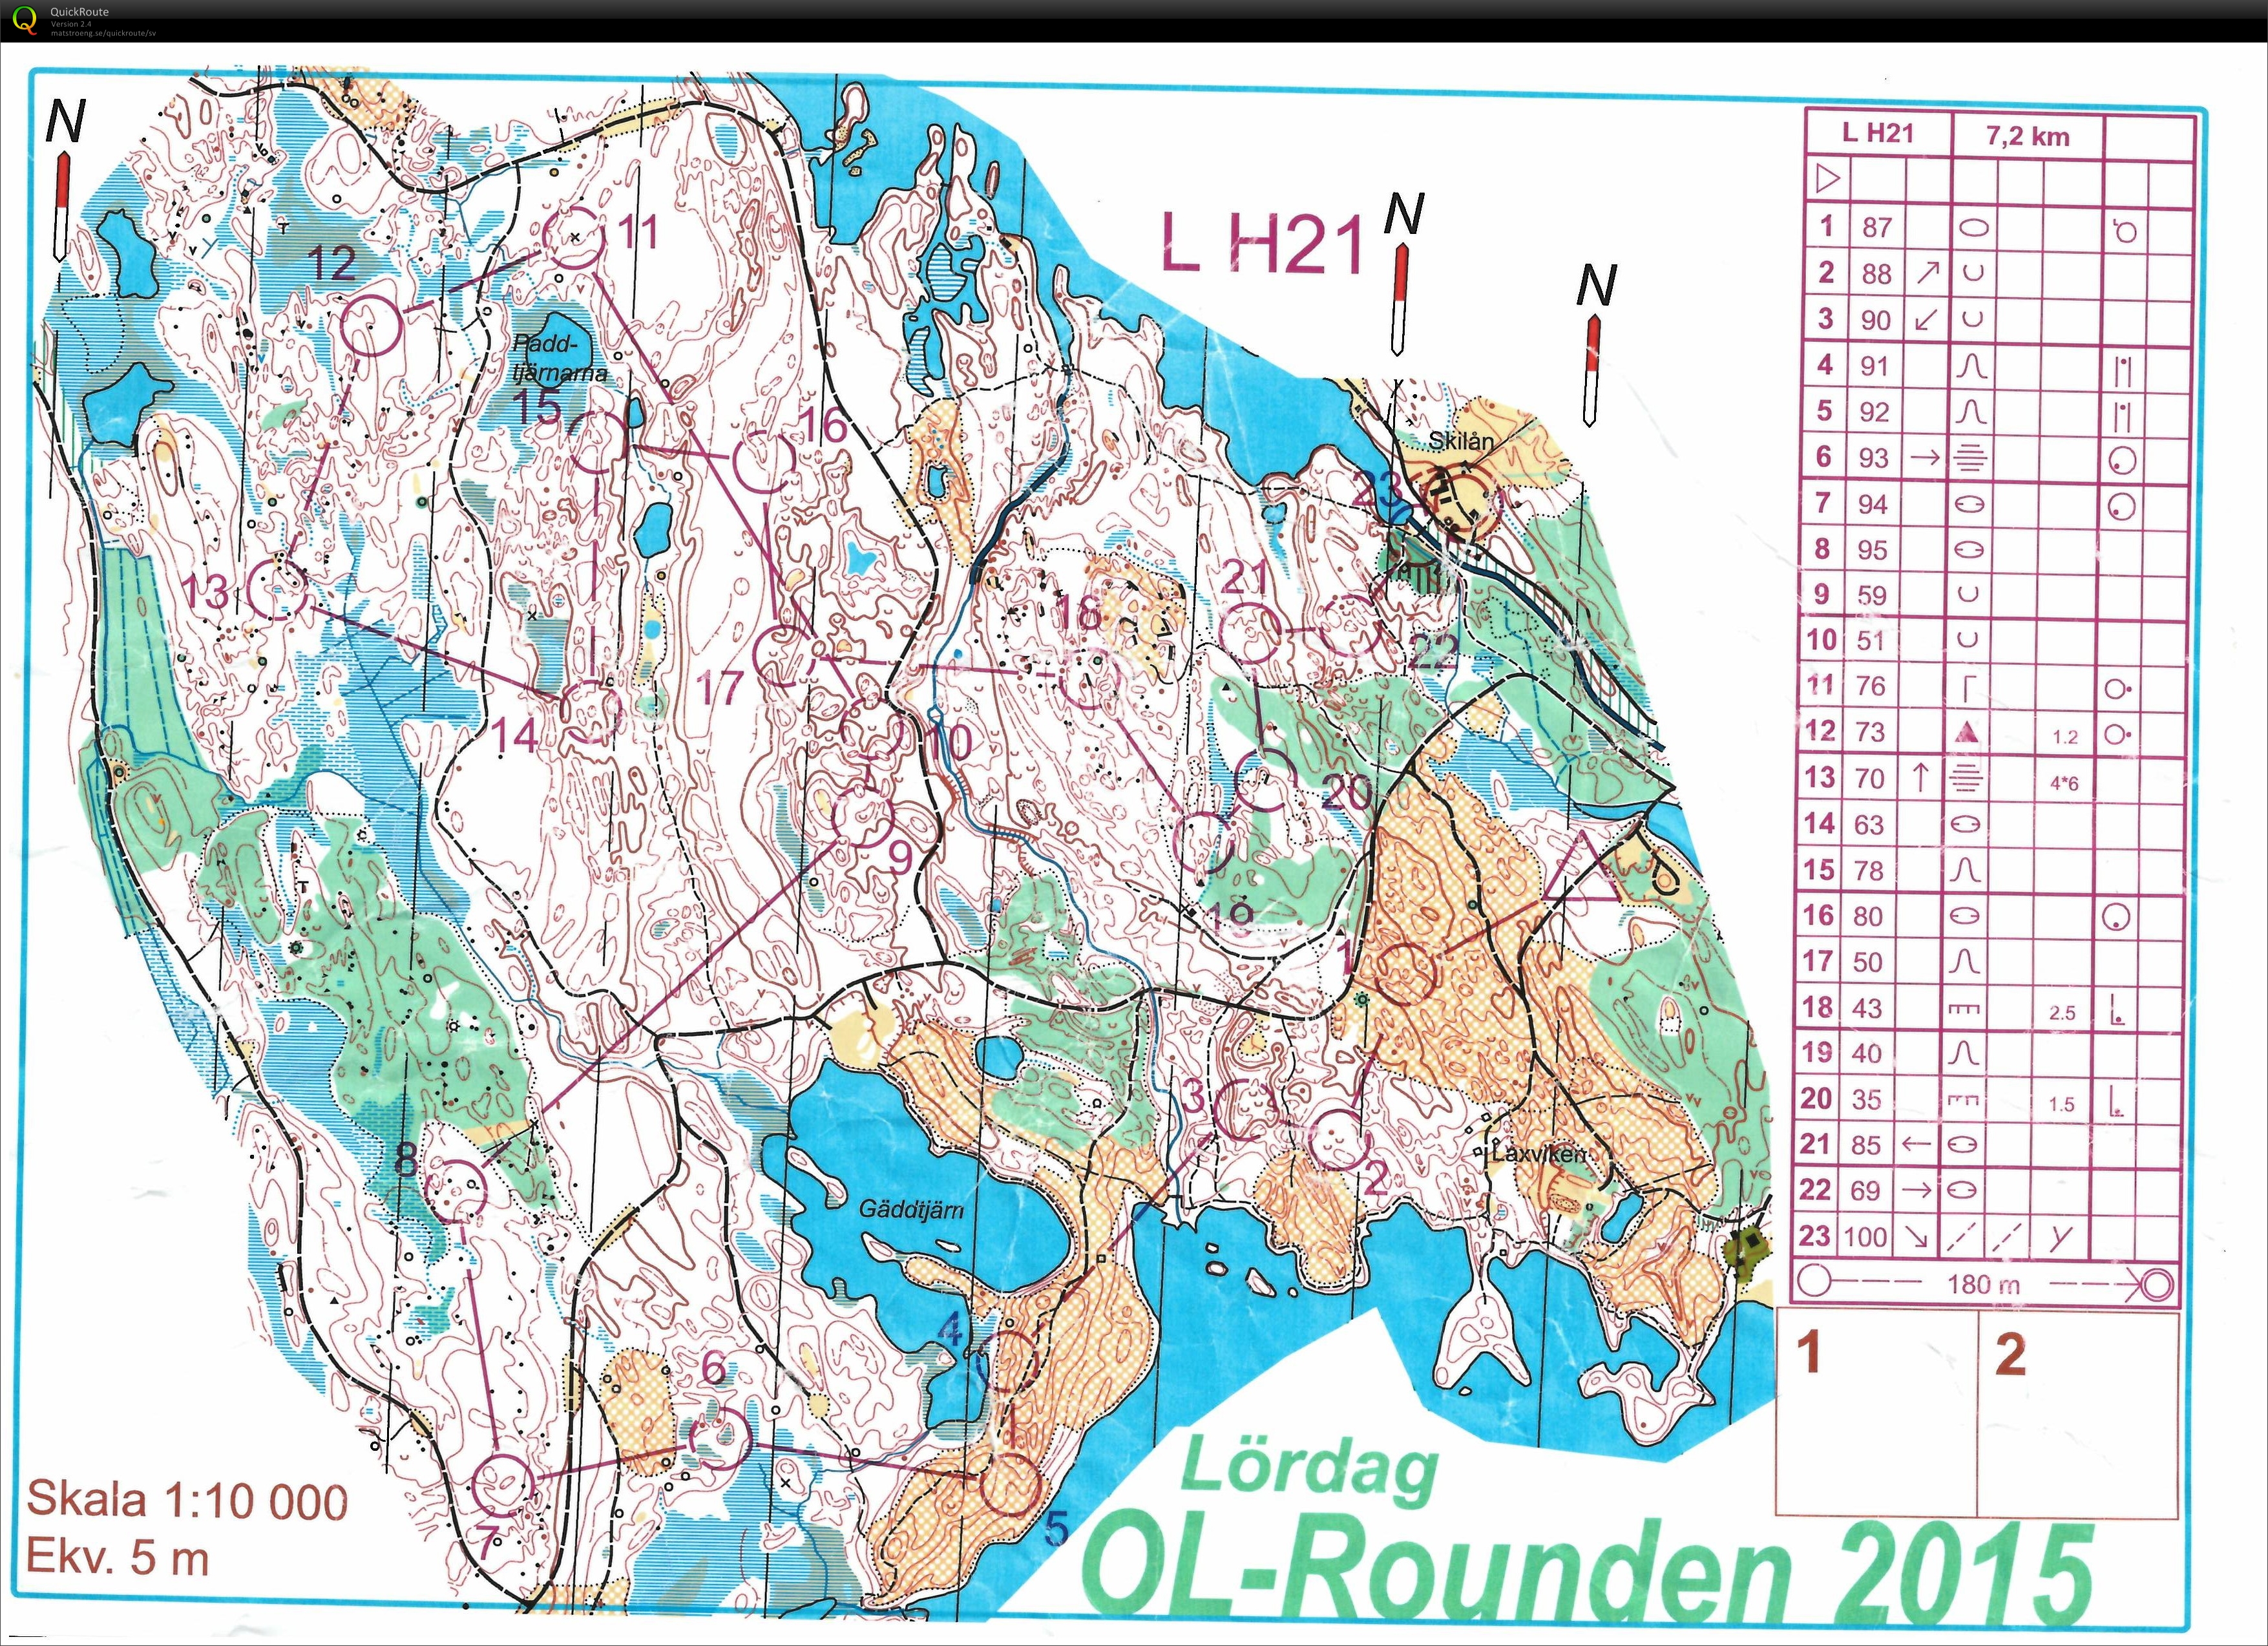 OL-Rounden, Förlängd medel (15.08.2015)